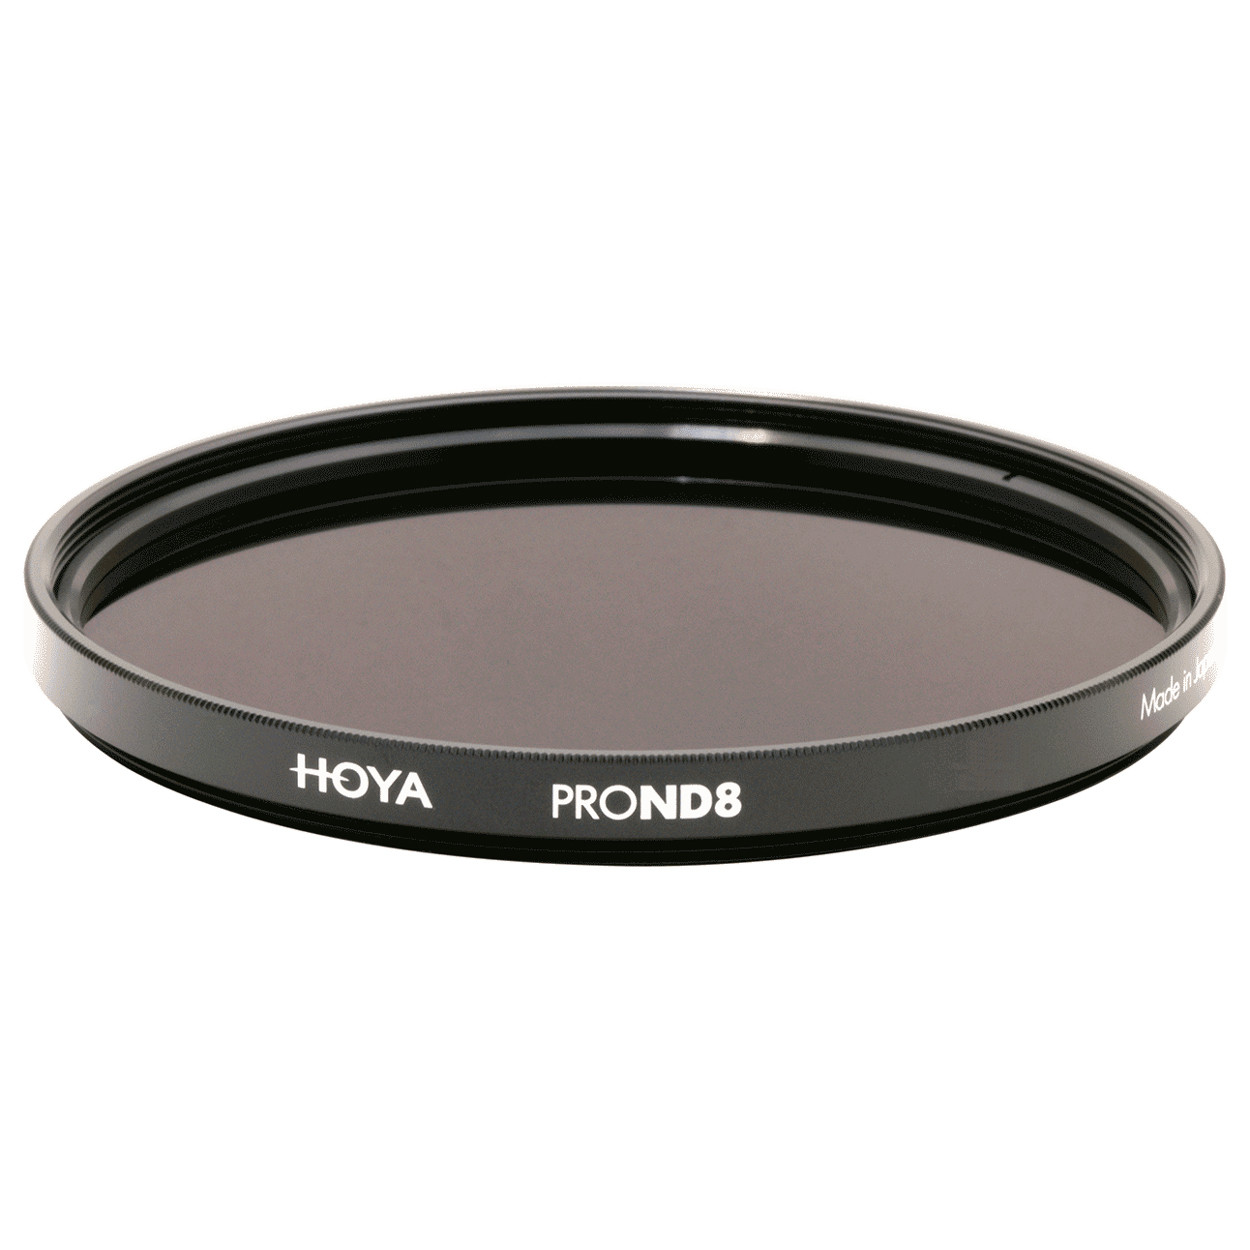 Фильтр нейтрально-серый Hoya Pro ND 8 (3 стопа) 77 мм